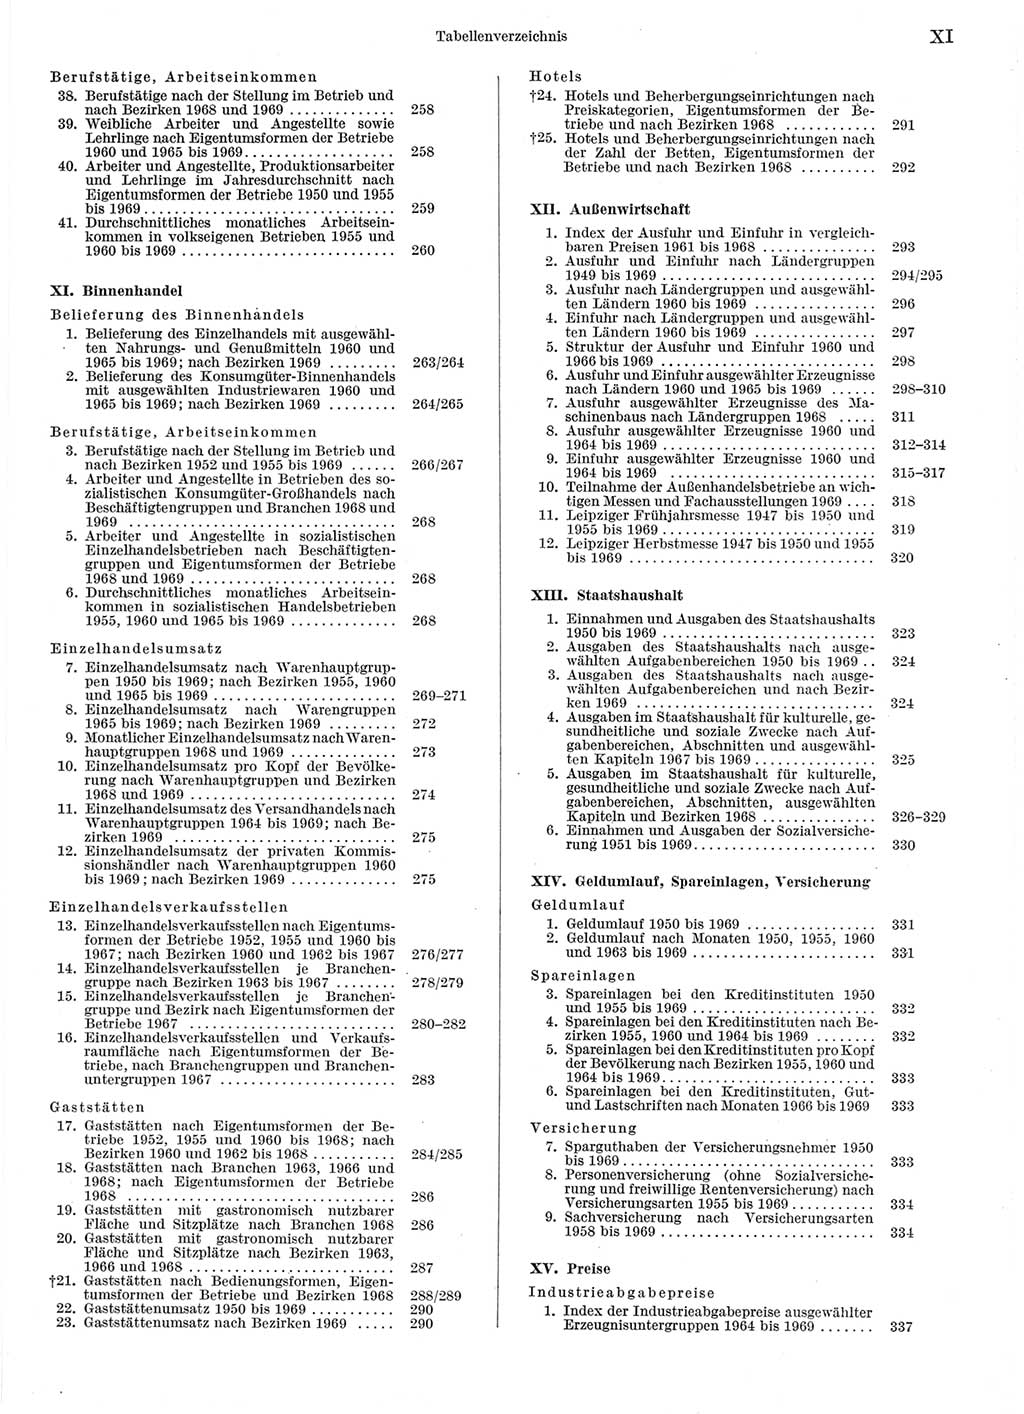 Statistisches Jahrbuch der Deutschen Demokratischen Republik (DDR) 1970, Seite 11 (Stat. Jb. DDR 1970, S. 11)